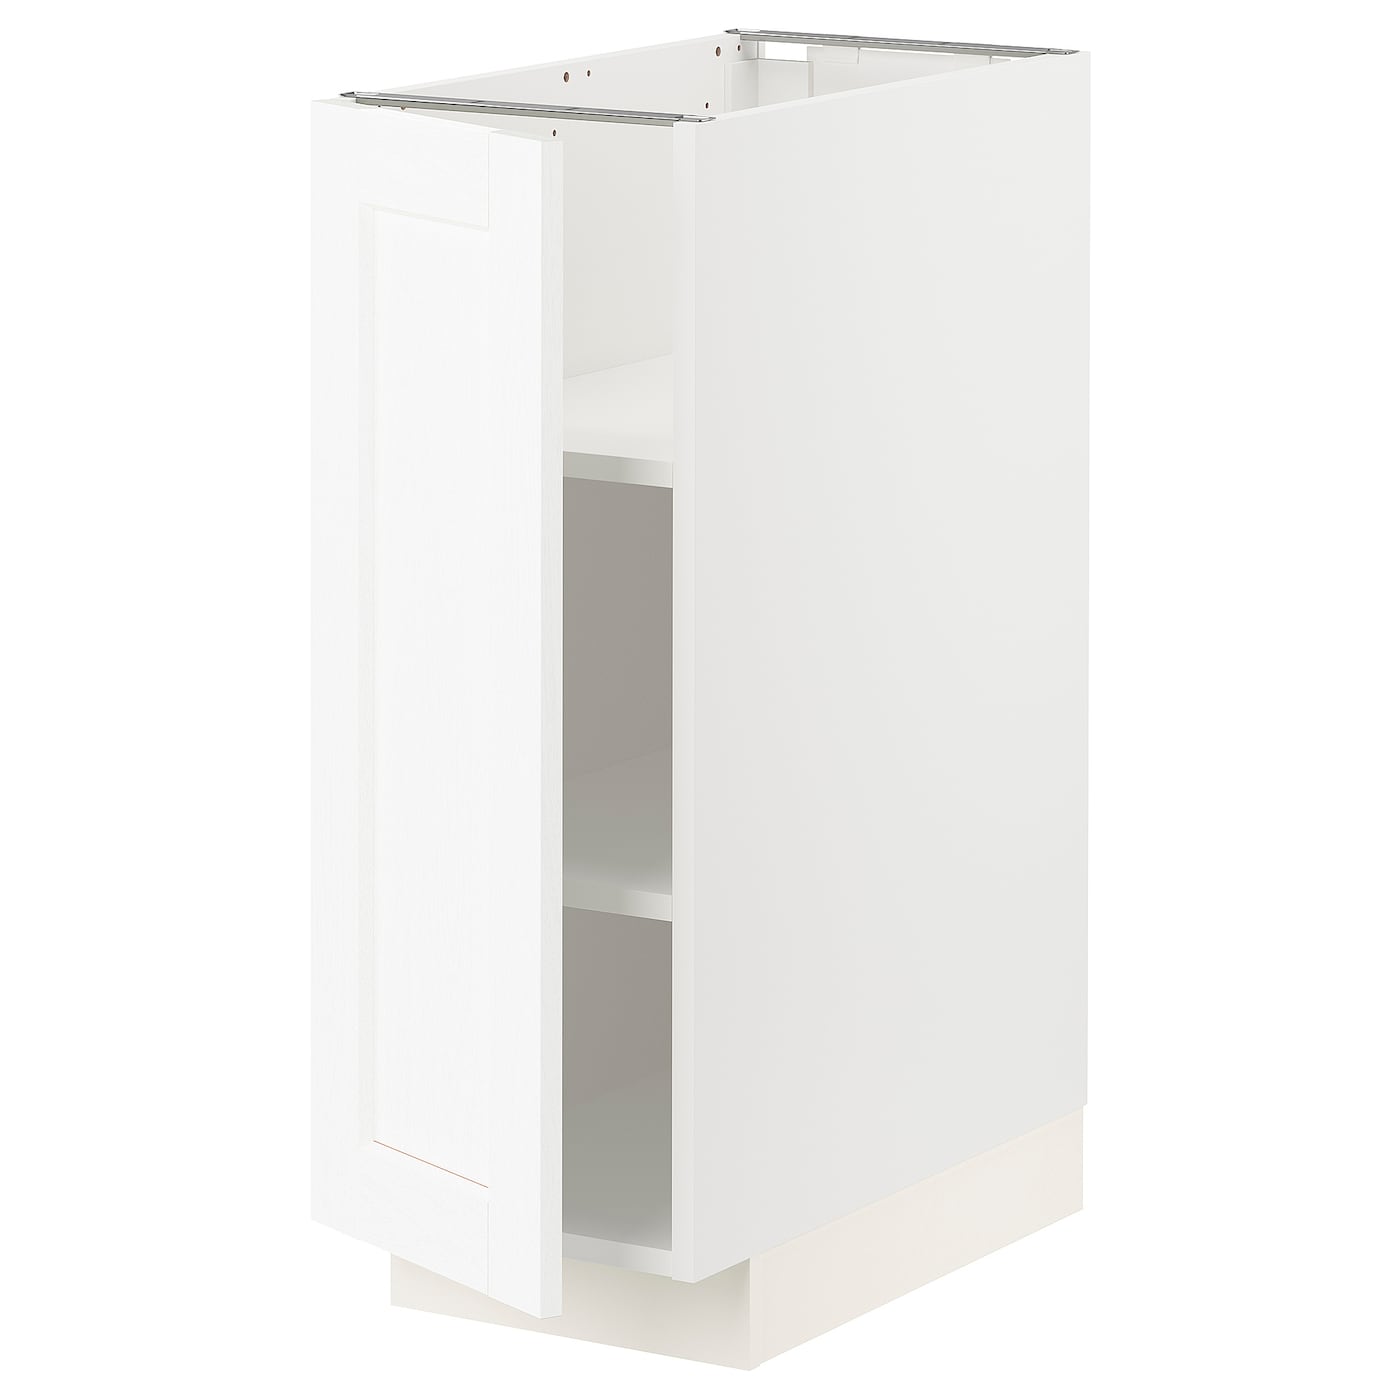 Напольный кухонный шкаф  - IKEA METOD MAXIMERA, 88x62x30см, белый, МЕТОД МАКСИМЕРА ИКЕА